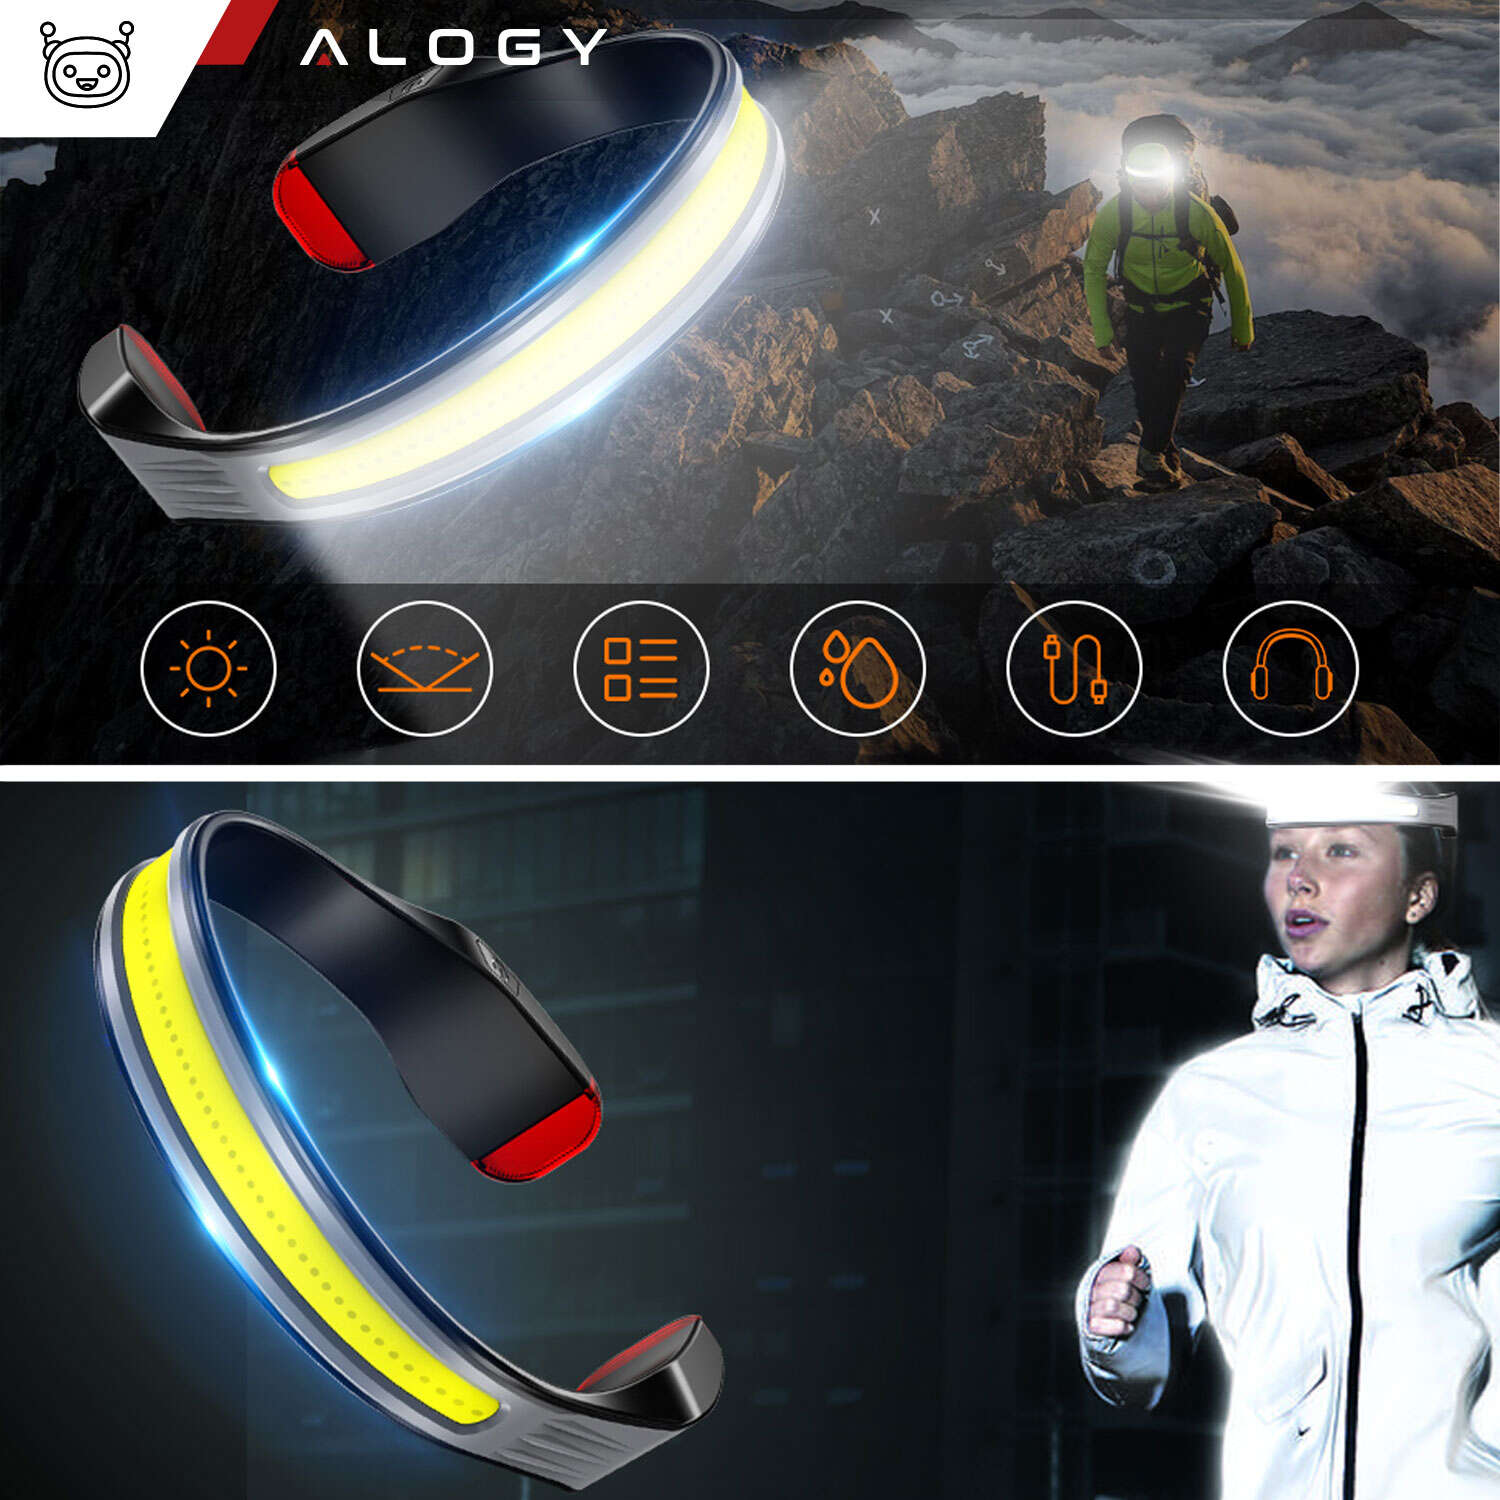 COB-LED-Stirnlampe zum Laufen mit dem Fahrrad, stark, wiederaufladbar, USB  Typ C, Alogy-Stirnlampe, IPX4, schwarz 